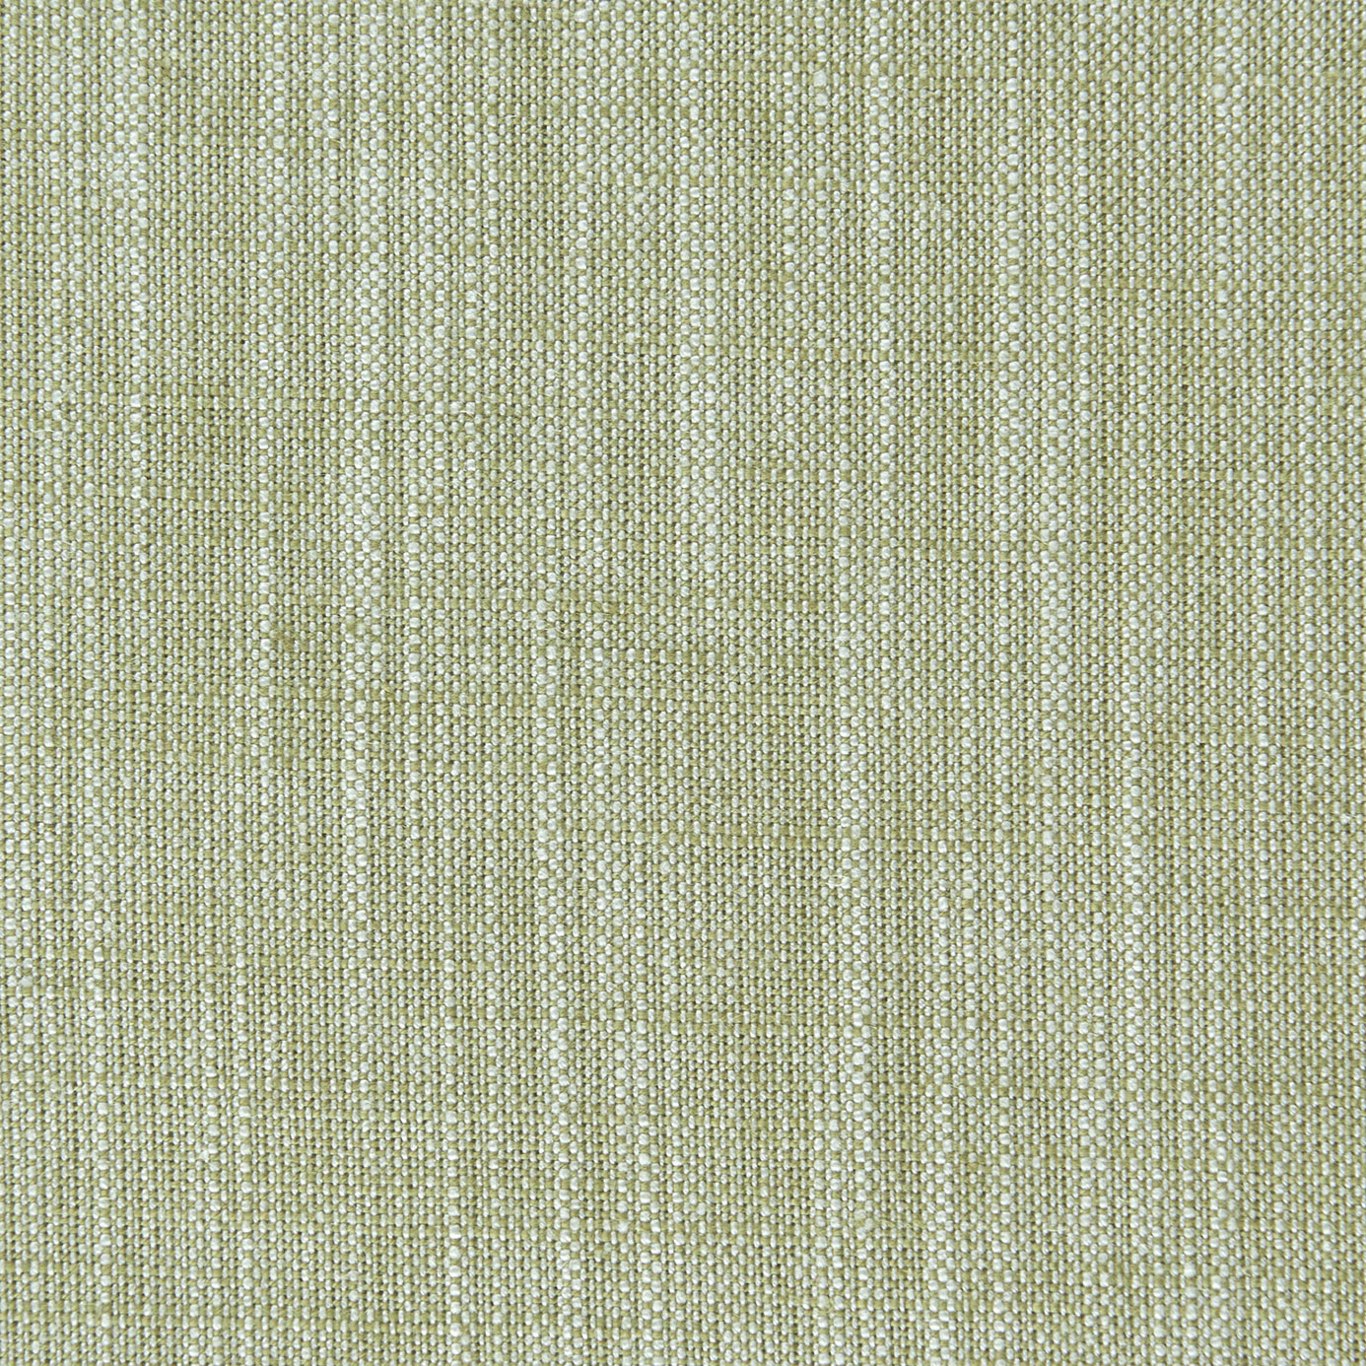 Biarritz Fabric by Clarke & Clarke - F0965/16 - Eucalyptus